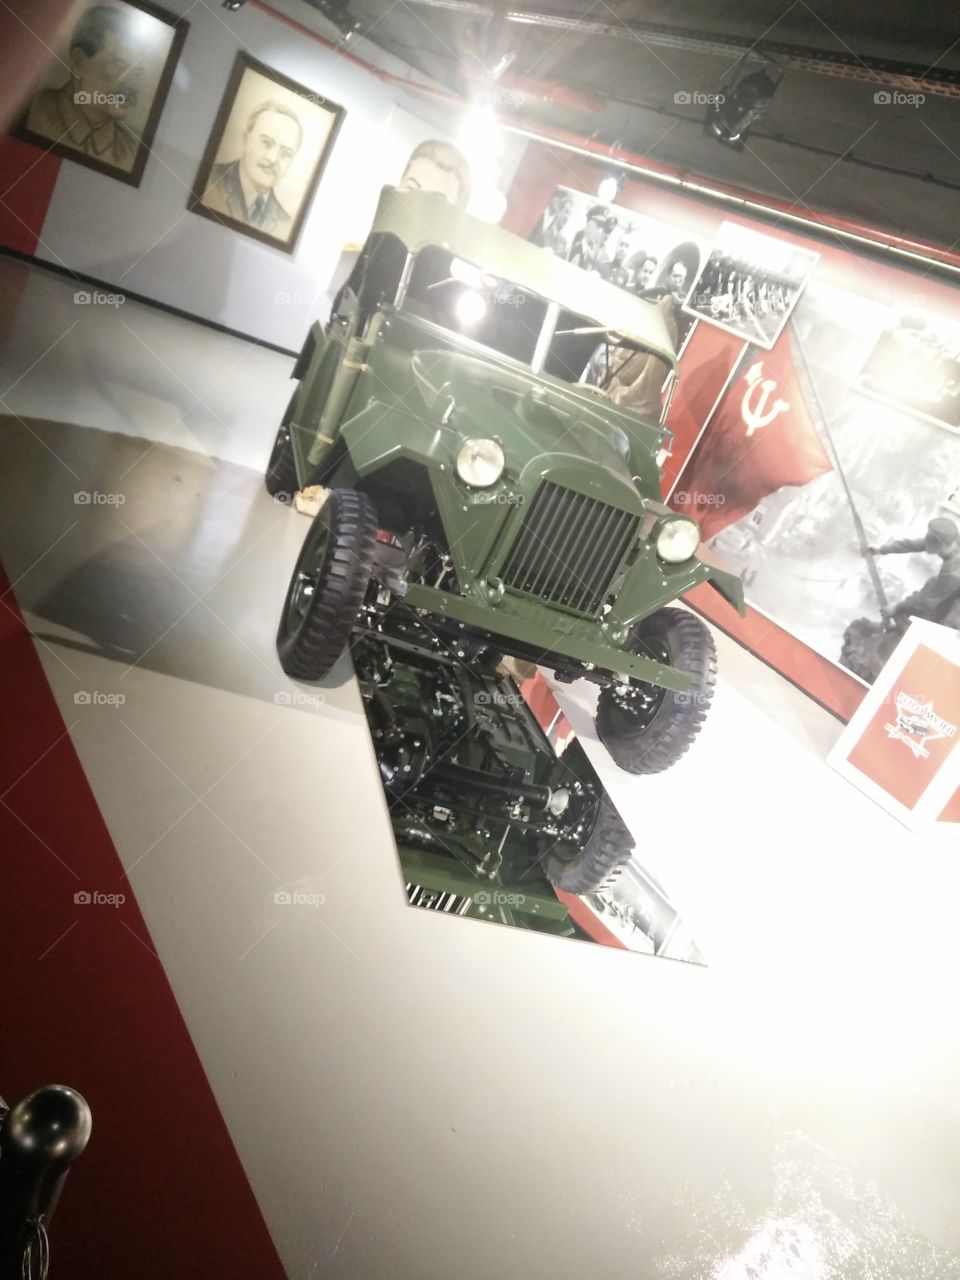 Soviet era military vehicle